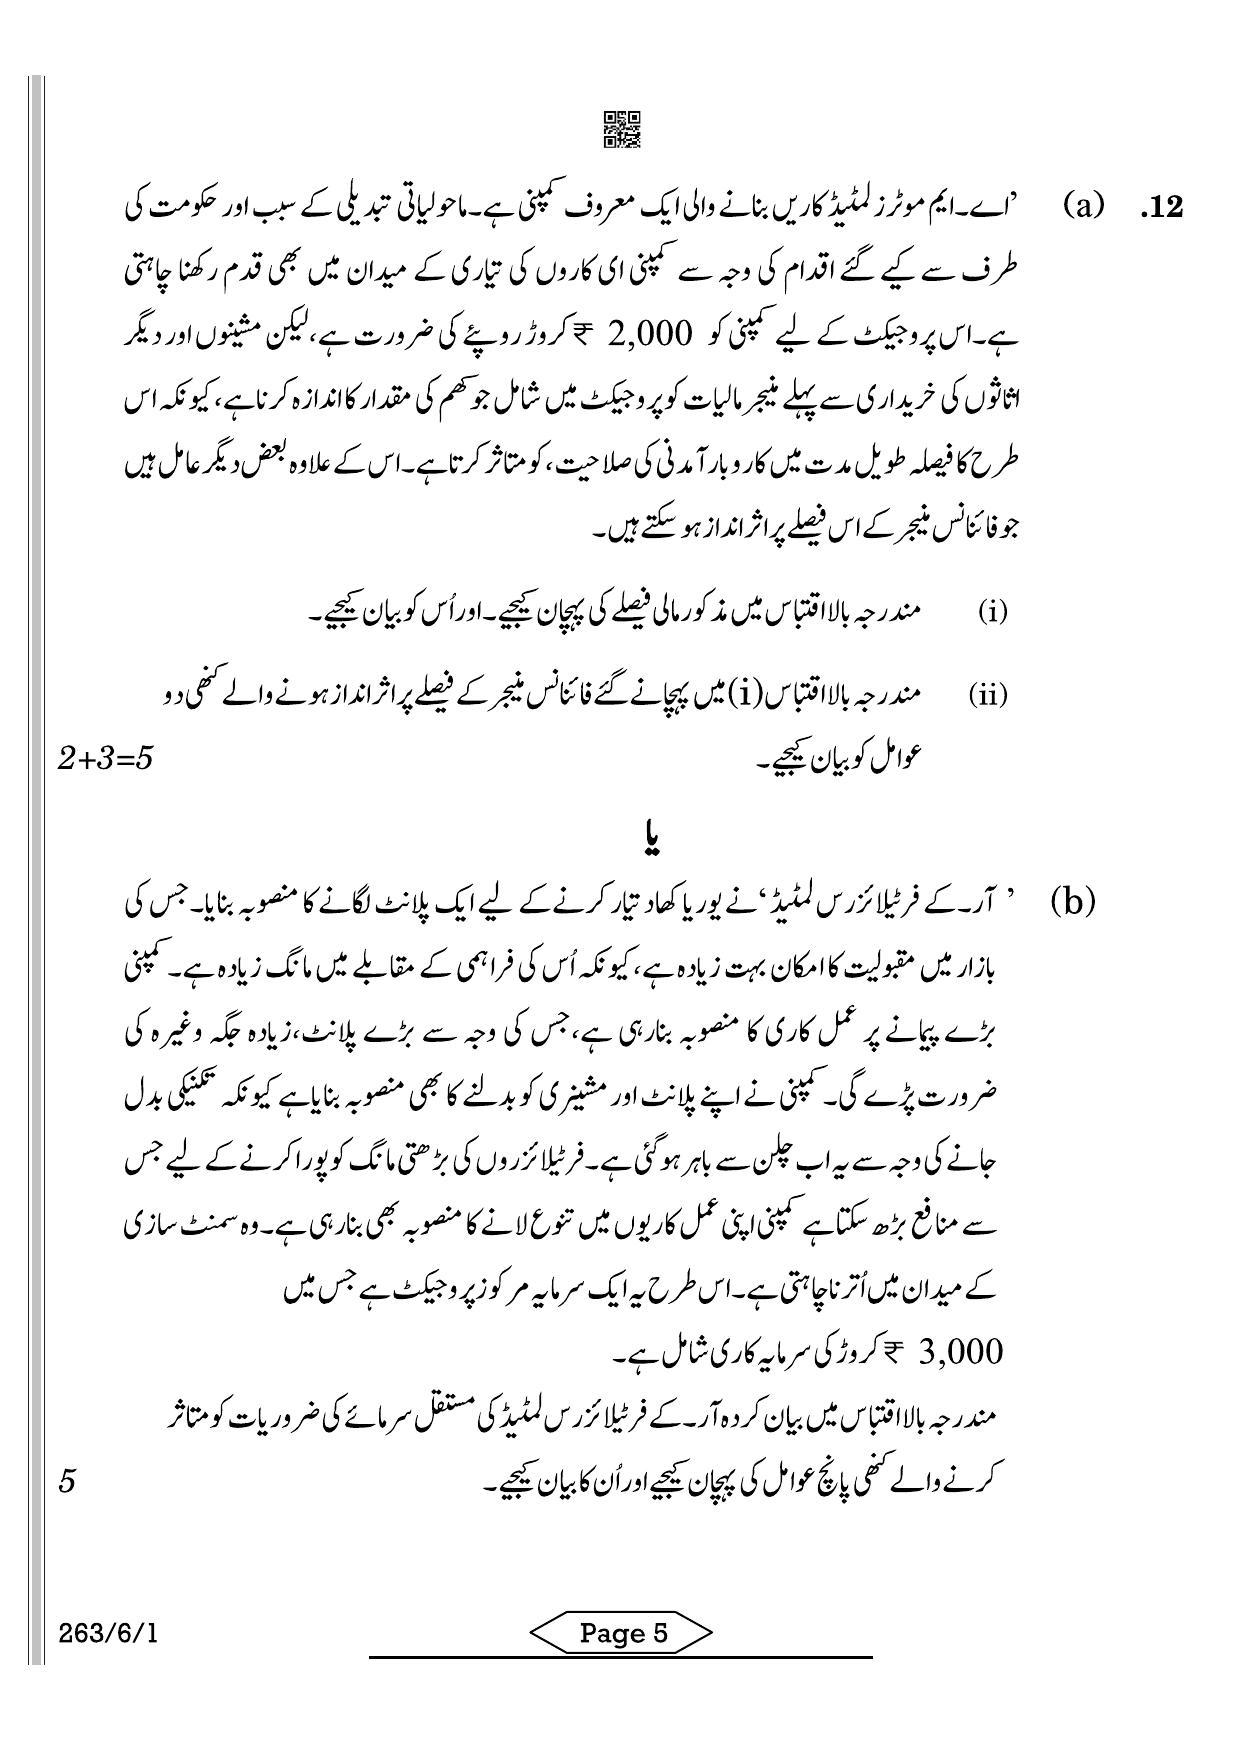 CBSE Class 12 263-6-1 Business Studies Urdu 2022 Compartment Question Paper - Page 5